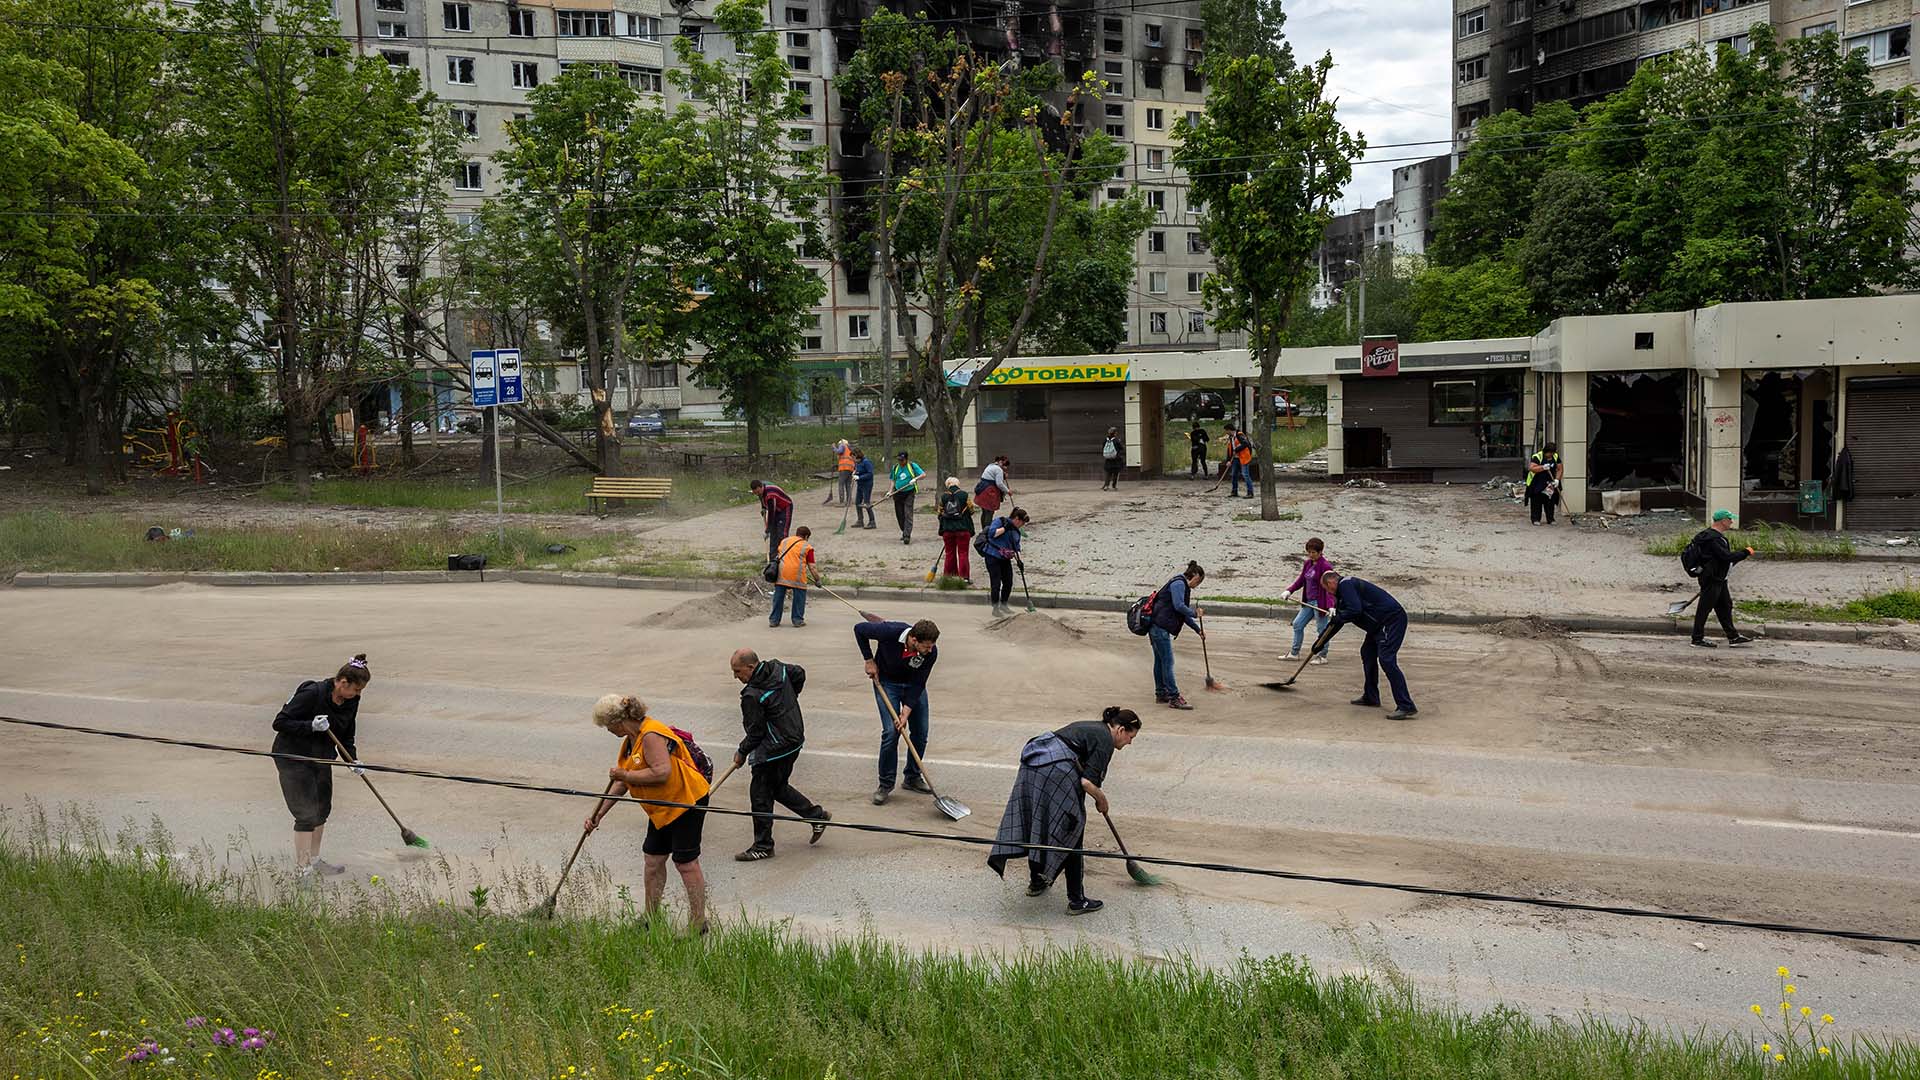 Trabajadores del transporte público barren metralla y restos de guerra en un antiguo barrio del frente el 25 de mayo de 2022 en Kharkiv, Ucrania.